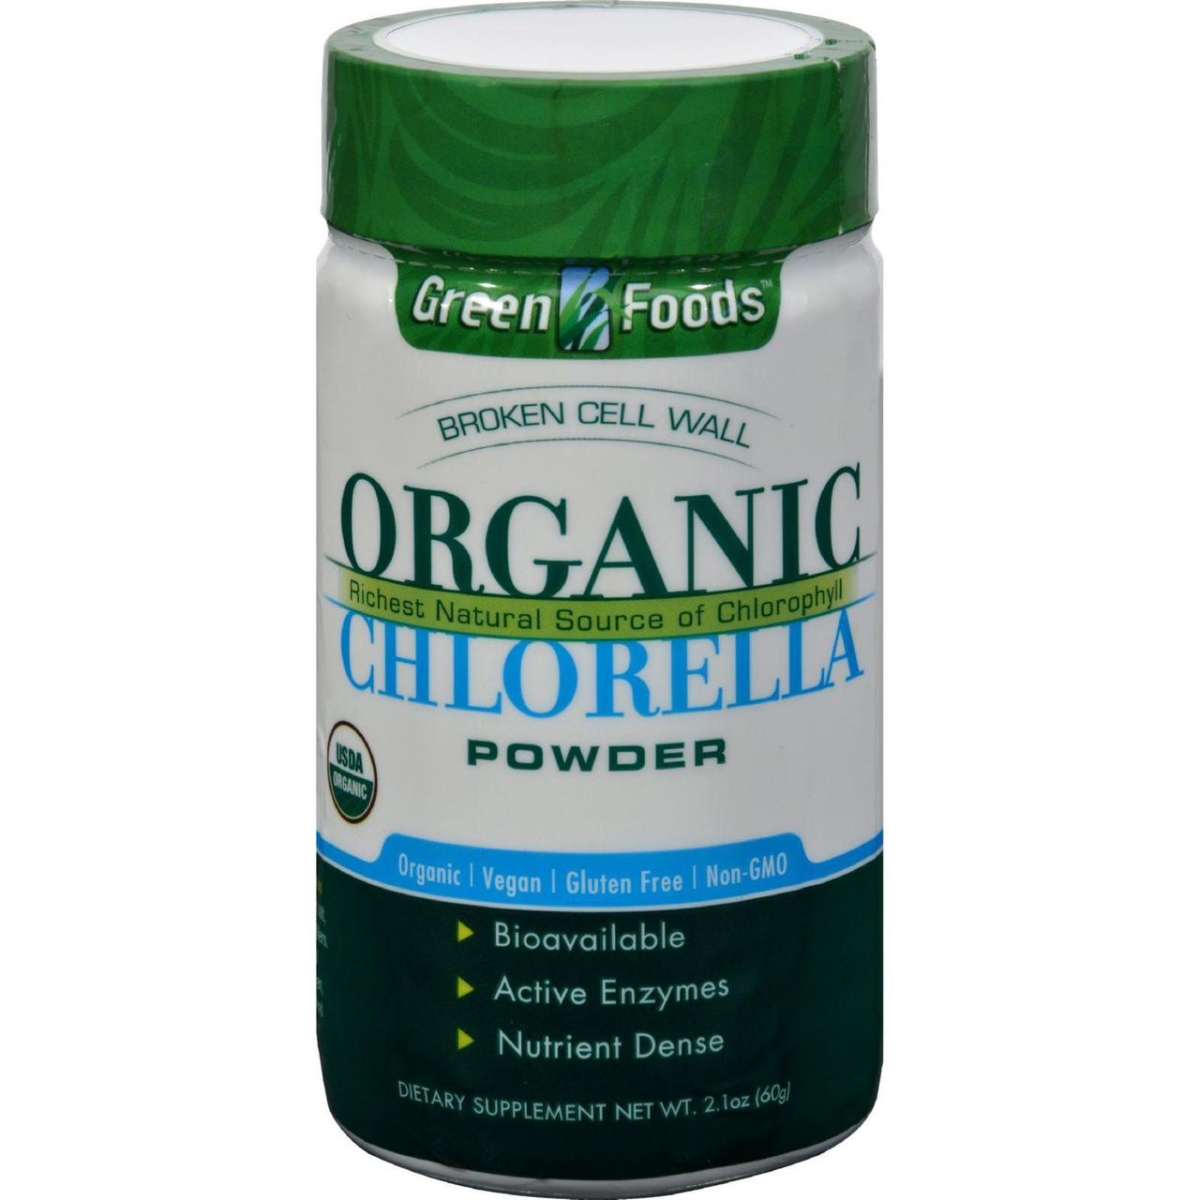 Hg0937268 2.1 Oz Organic Chlorella Powder